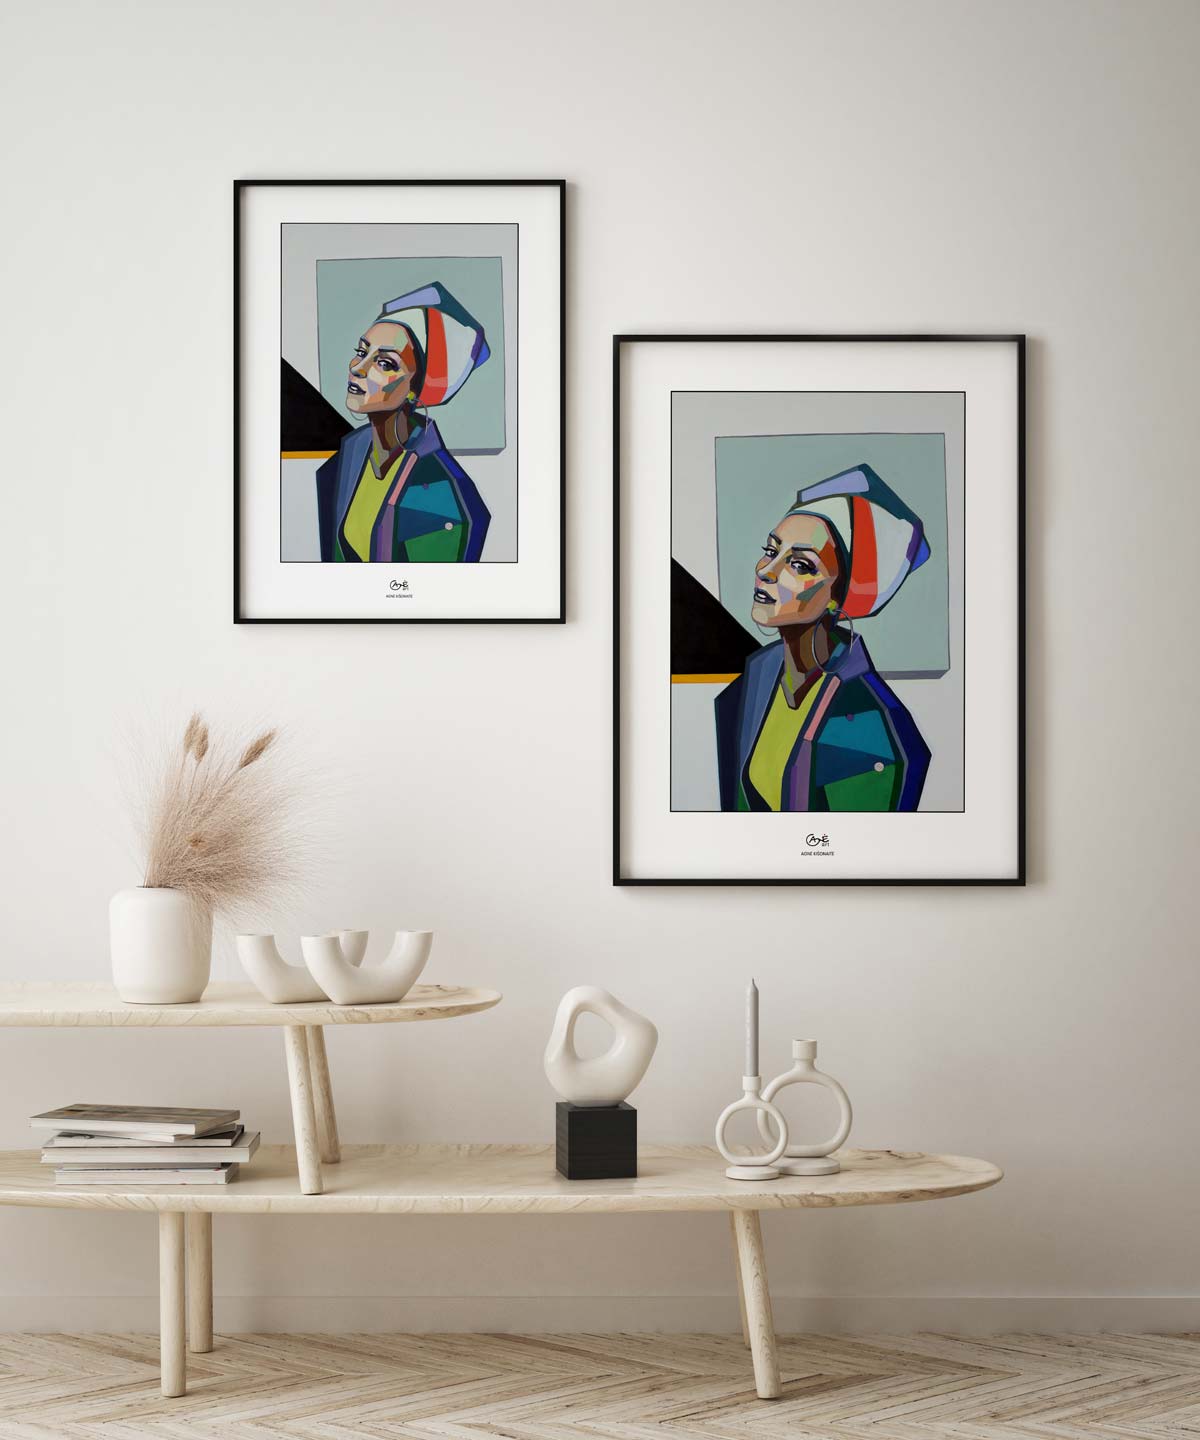 Agne Kisonaite painting reproductions print Selfie